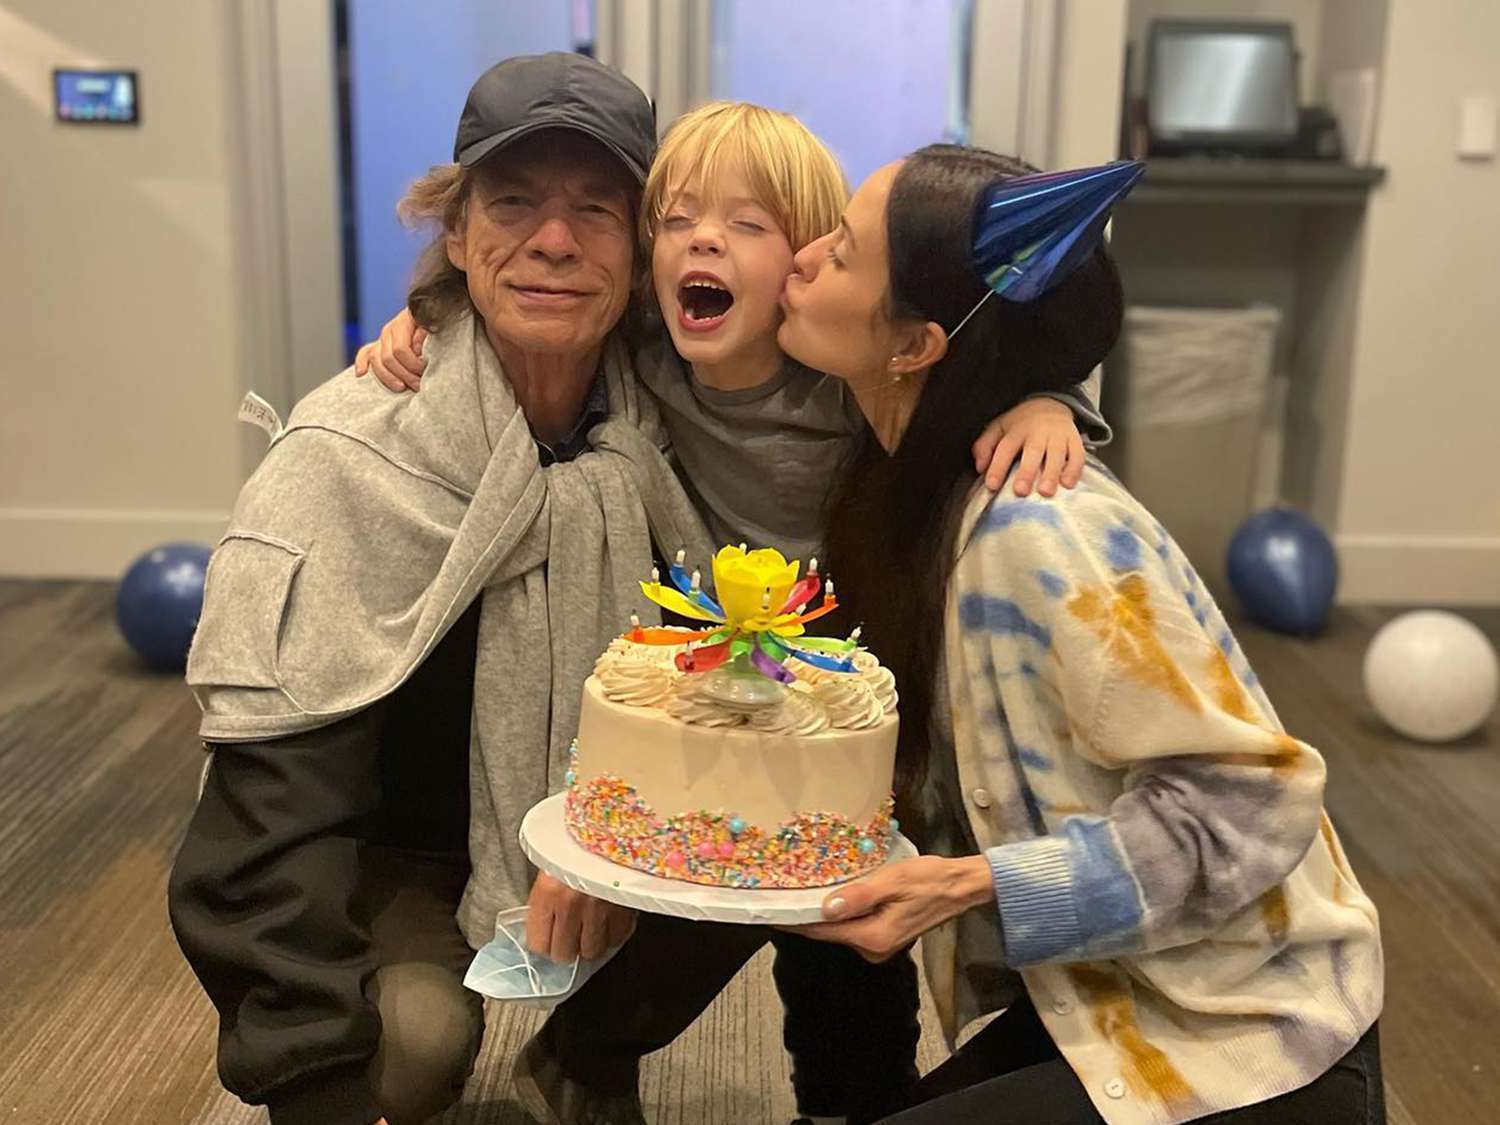 Urodziła jego ósme dziecko: Mick Jagger zaręczył się z 36-letnią baletnicą w wieku 80 lat